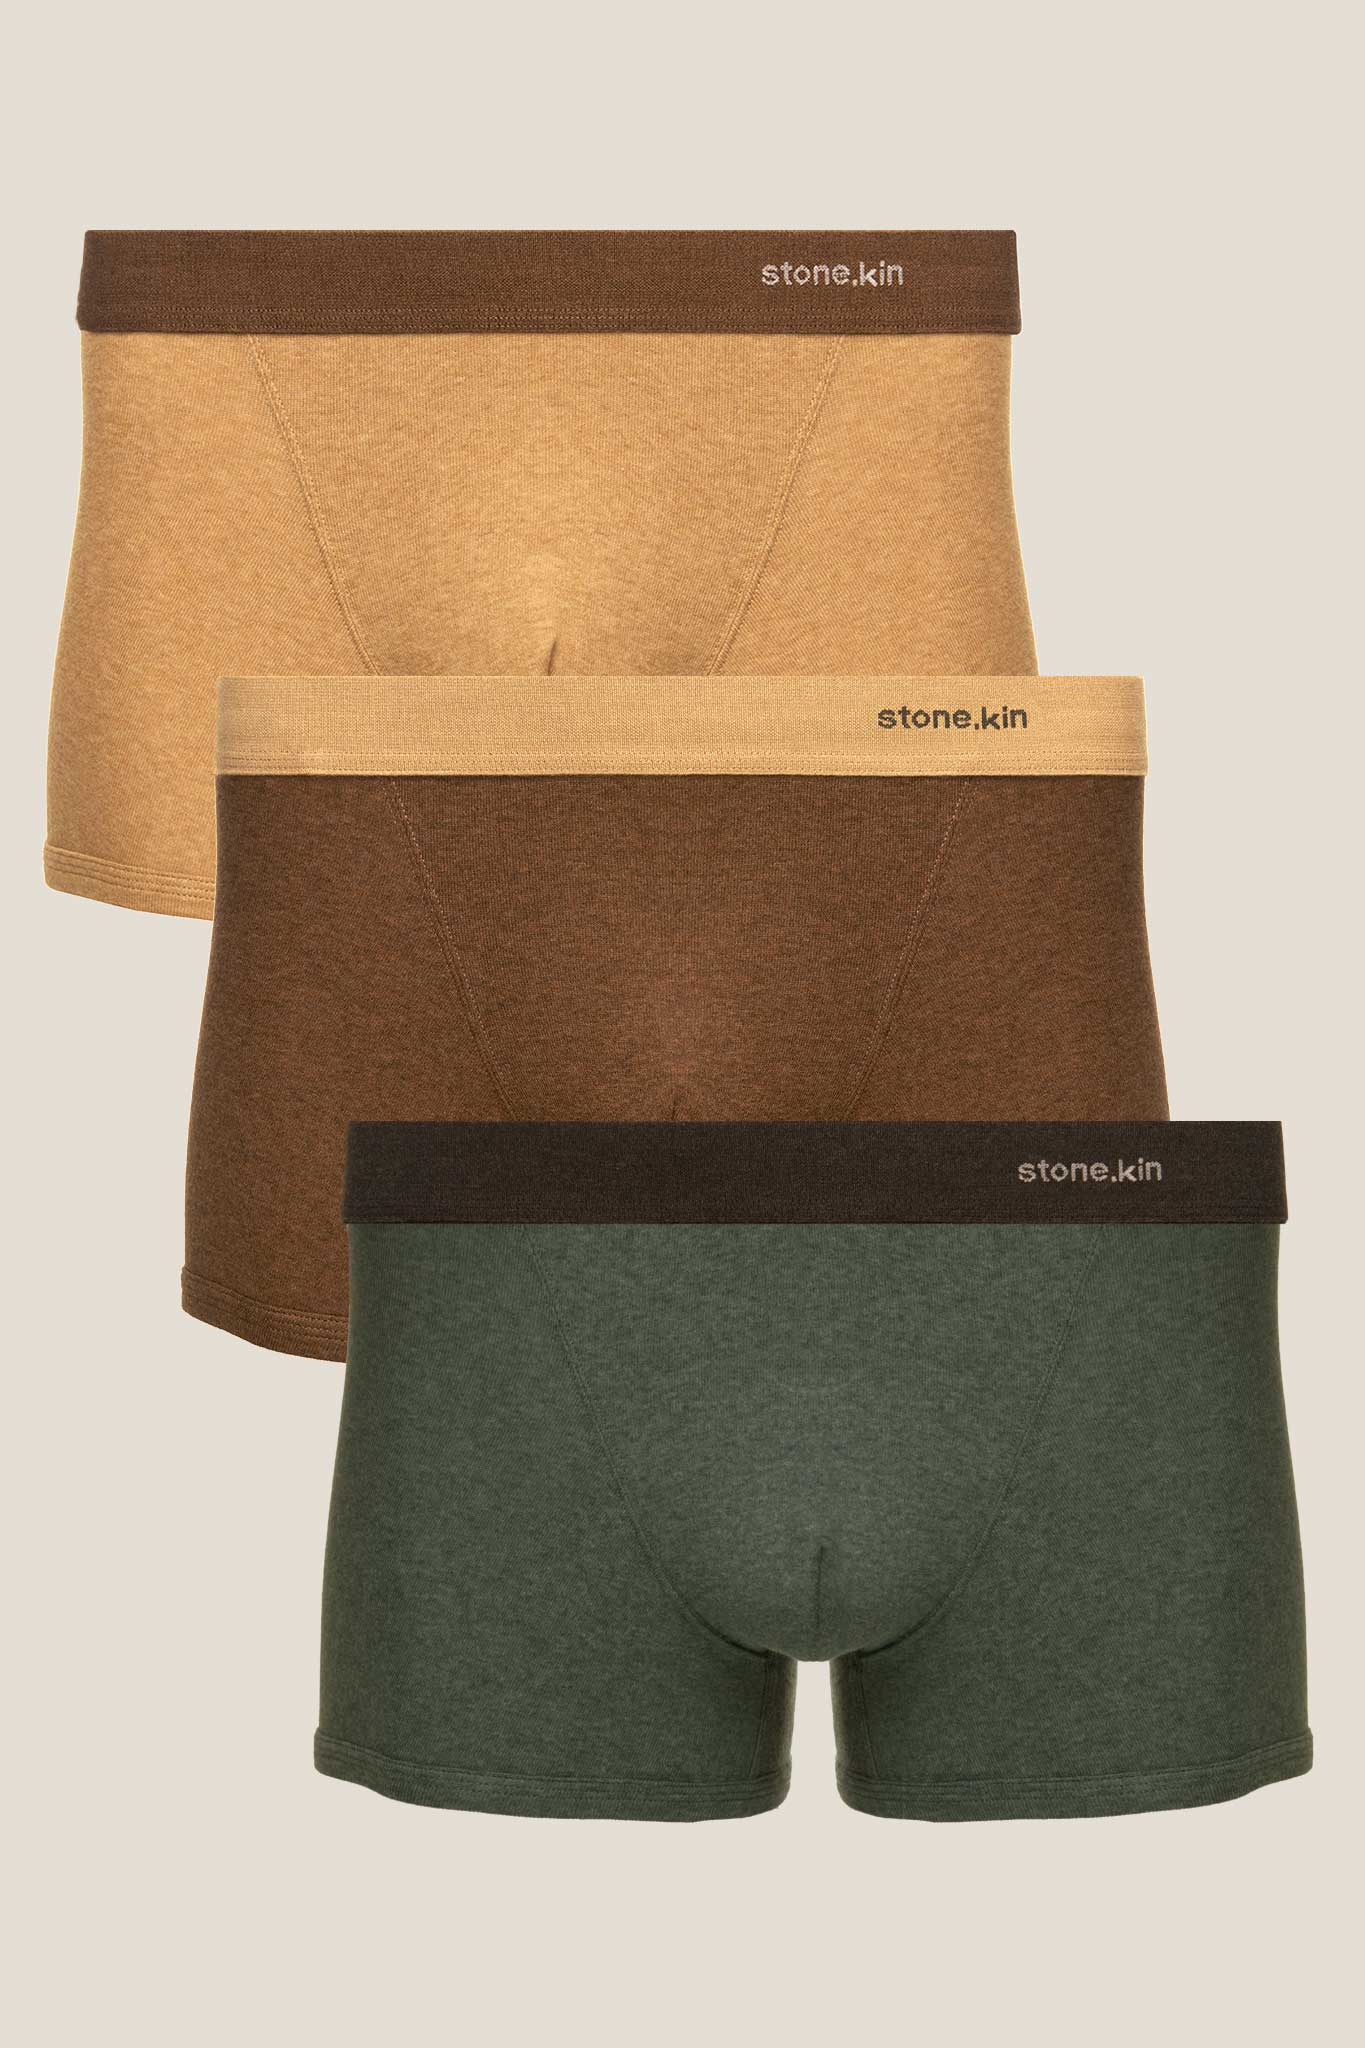 Men’s 3 Pack underwear by Stone.kin – Soft, Comfortable Organic Cotton Underwear – Men’s Boxer Briefs, Men’s Trunks, Men’s Briefs, Women’s Bodysuits, Women’s Briefs, Women’s Bralette’s, Women’s Thong, and Women’s G-string’s.